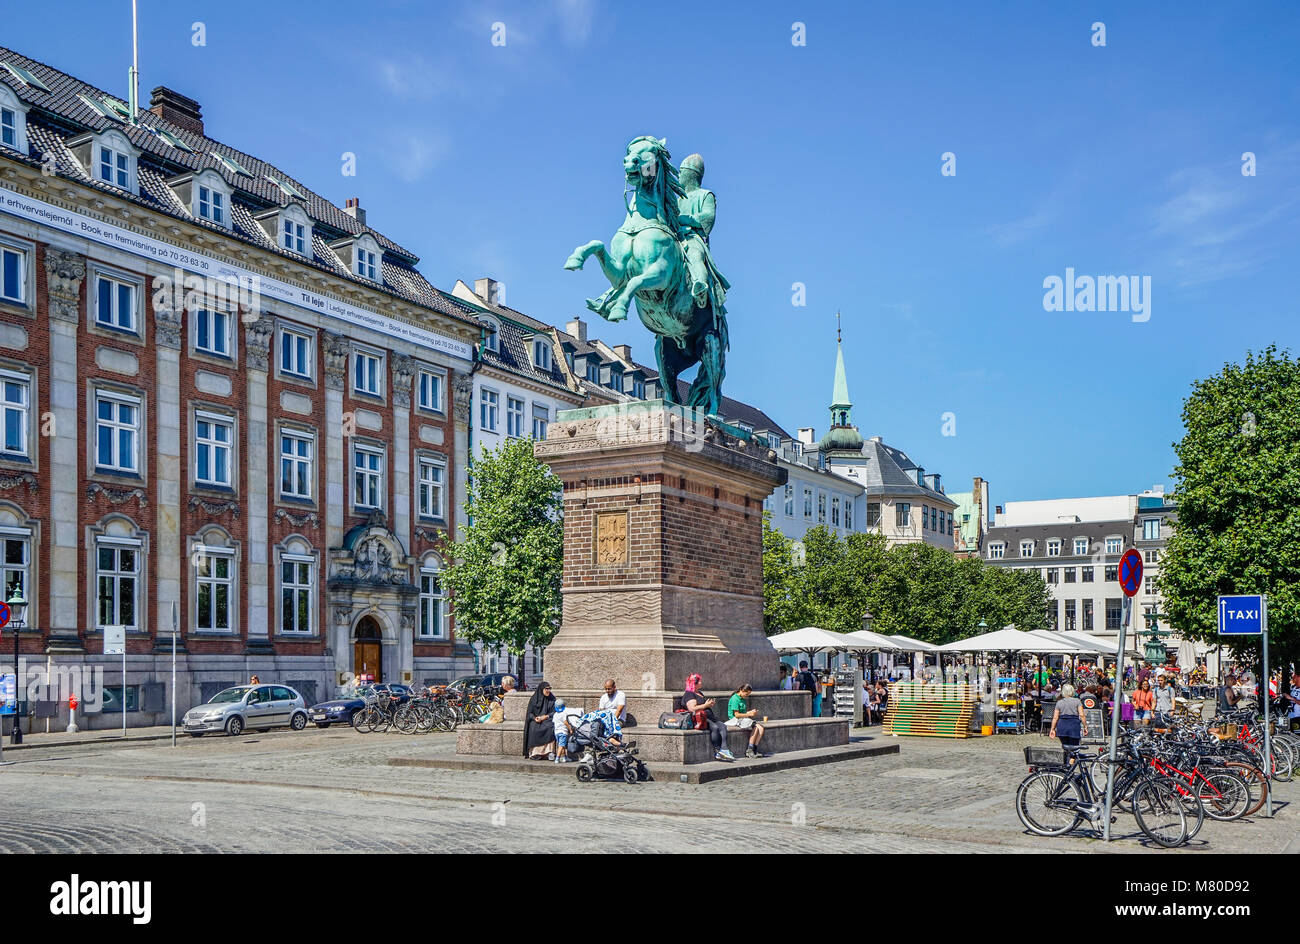 Le Danemark, la Nouvelle-Zélande, Copenhague, statue équestre sur Højbro Plads commémore l'évêque fondateur de la ville Absalom Banque D'Images